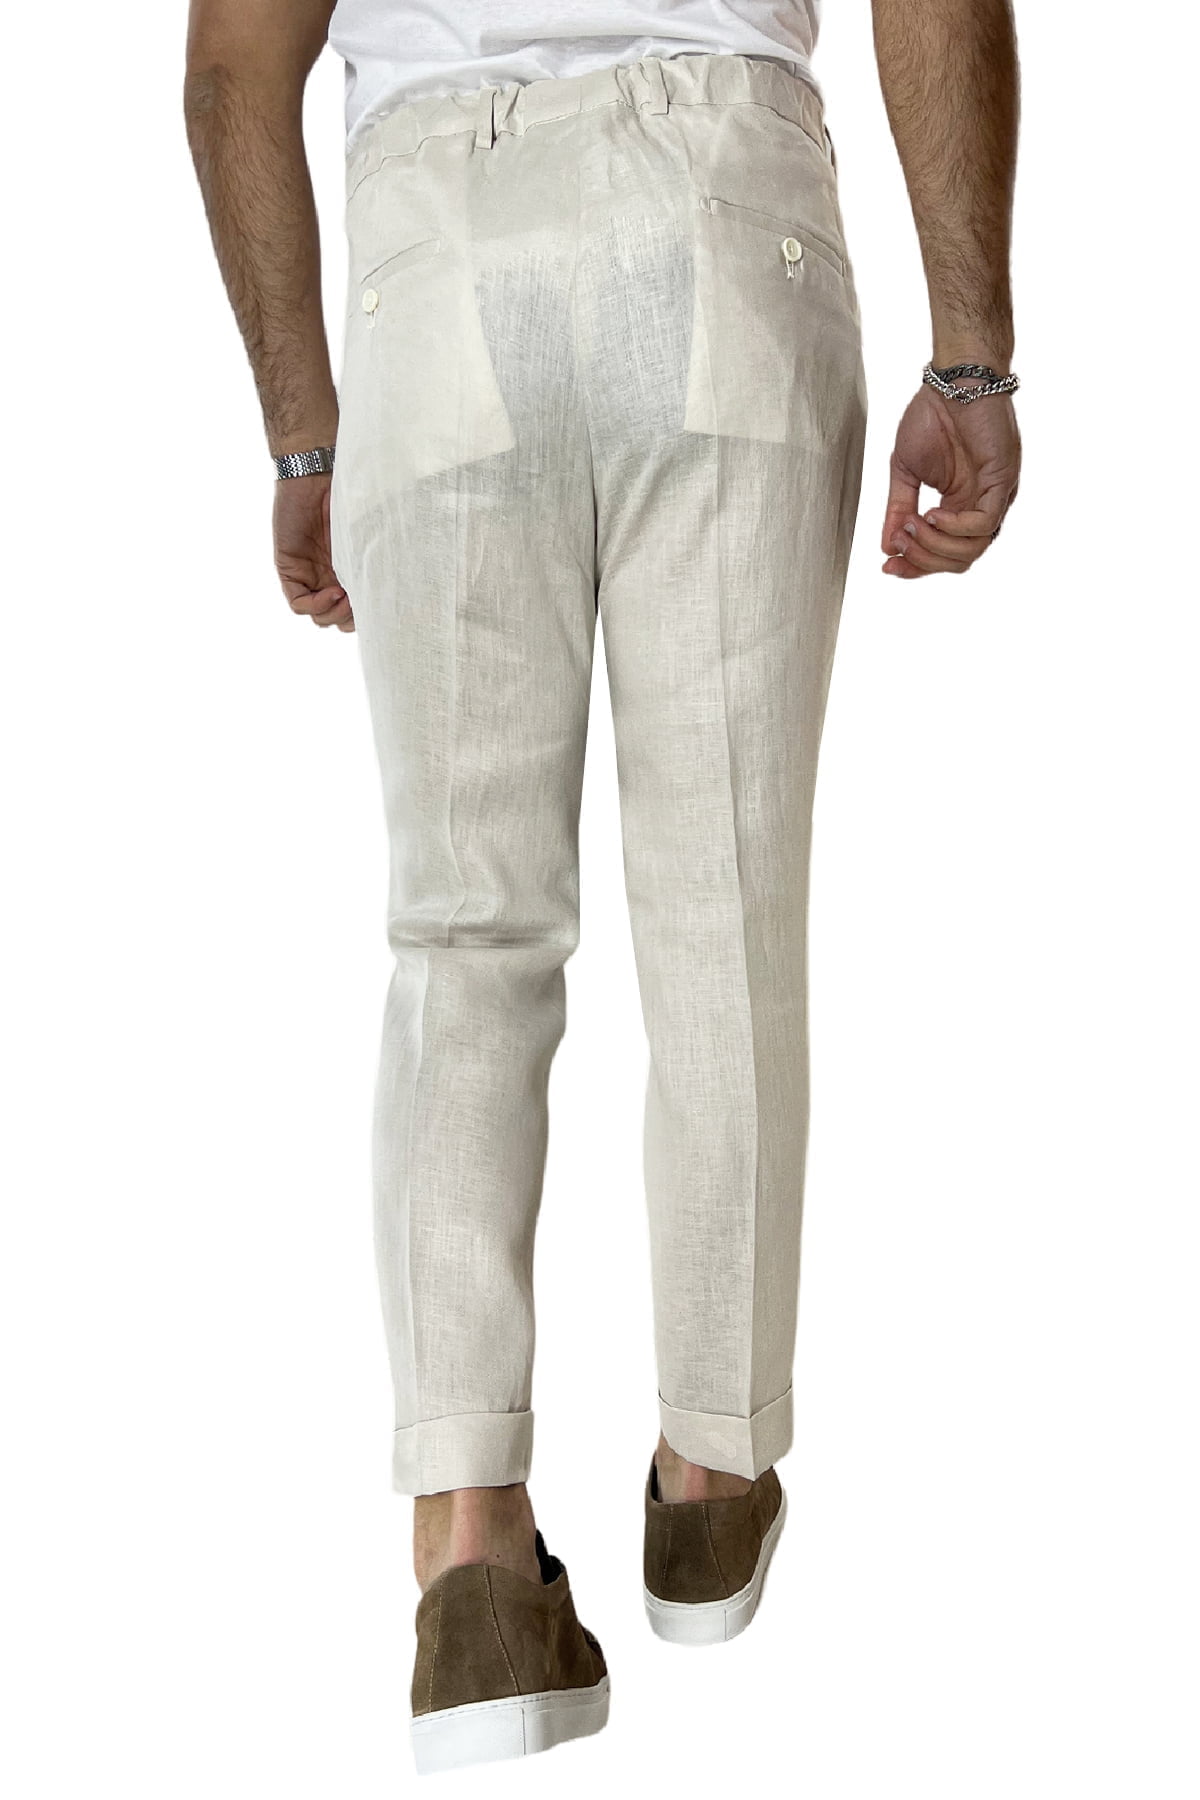 Pantalaccio uomo beige in lino 100% tasca america con doppia pence e laccio in vita risvolto 4cm